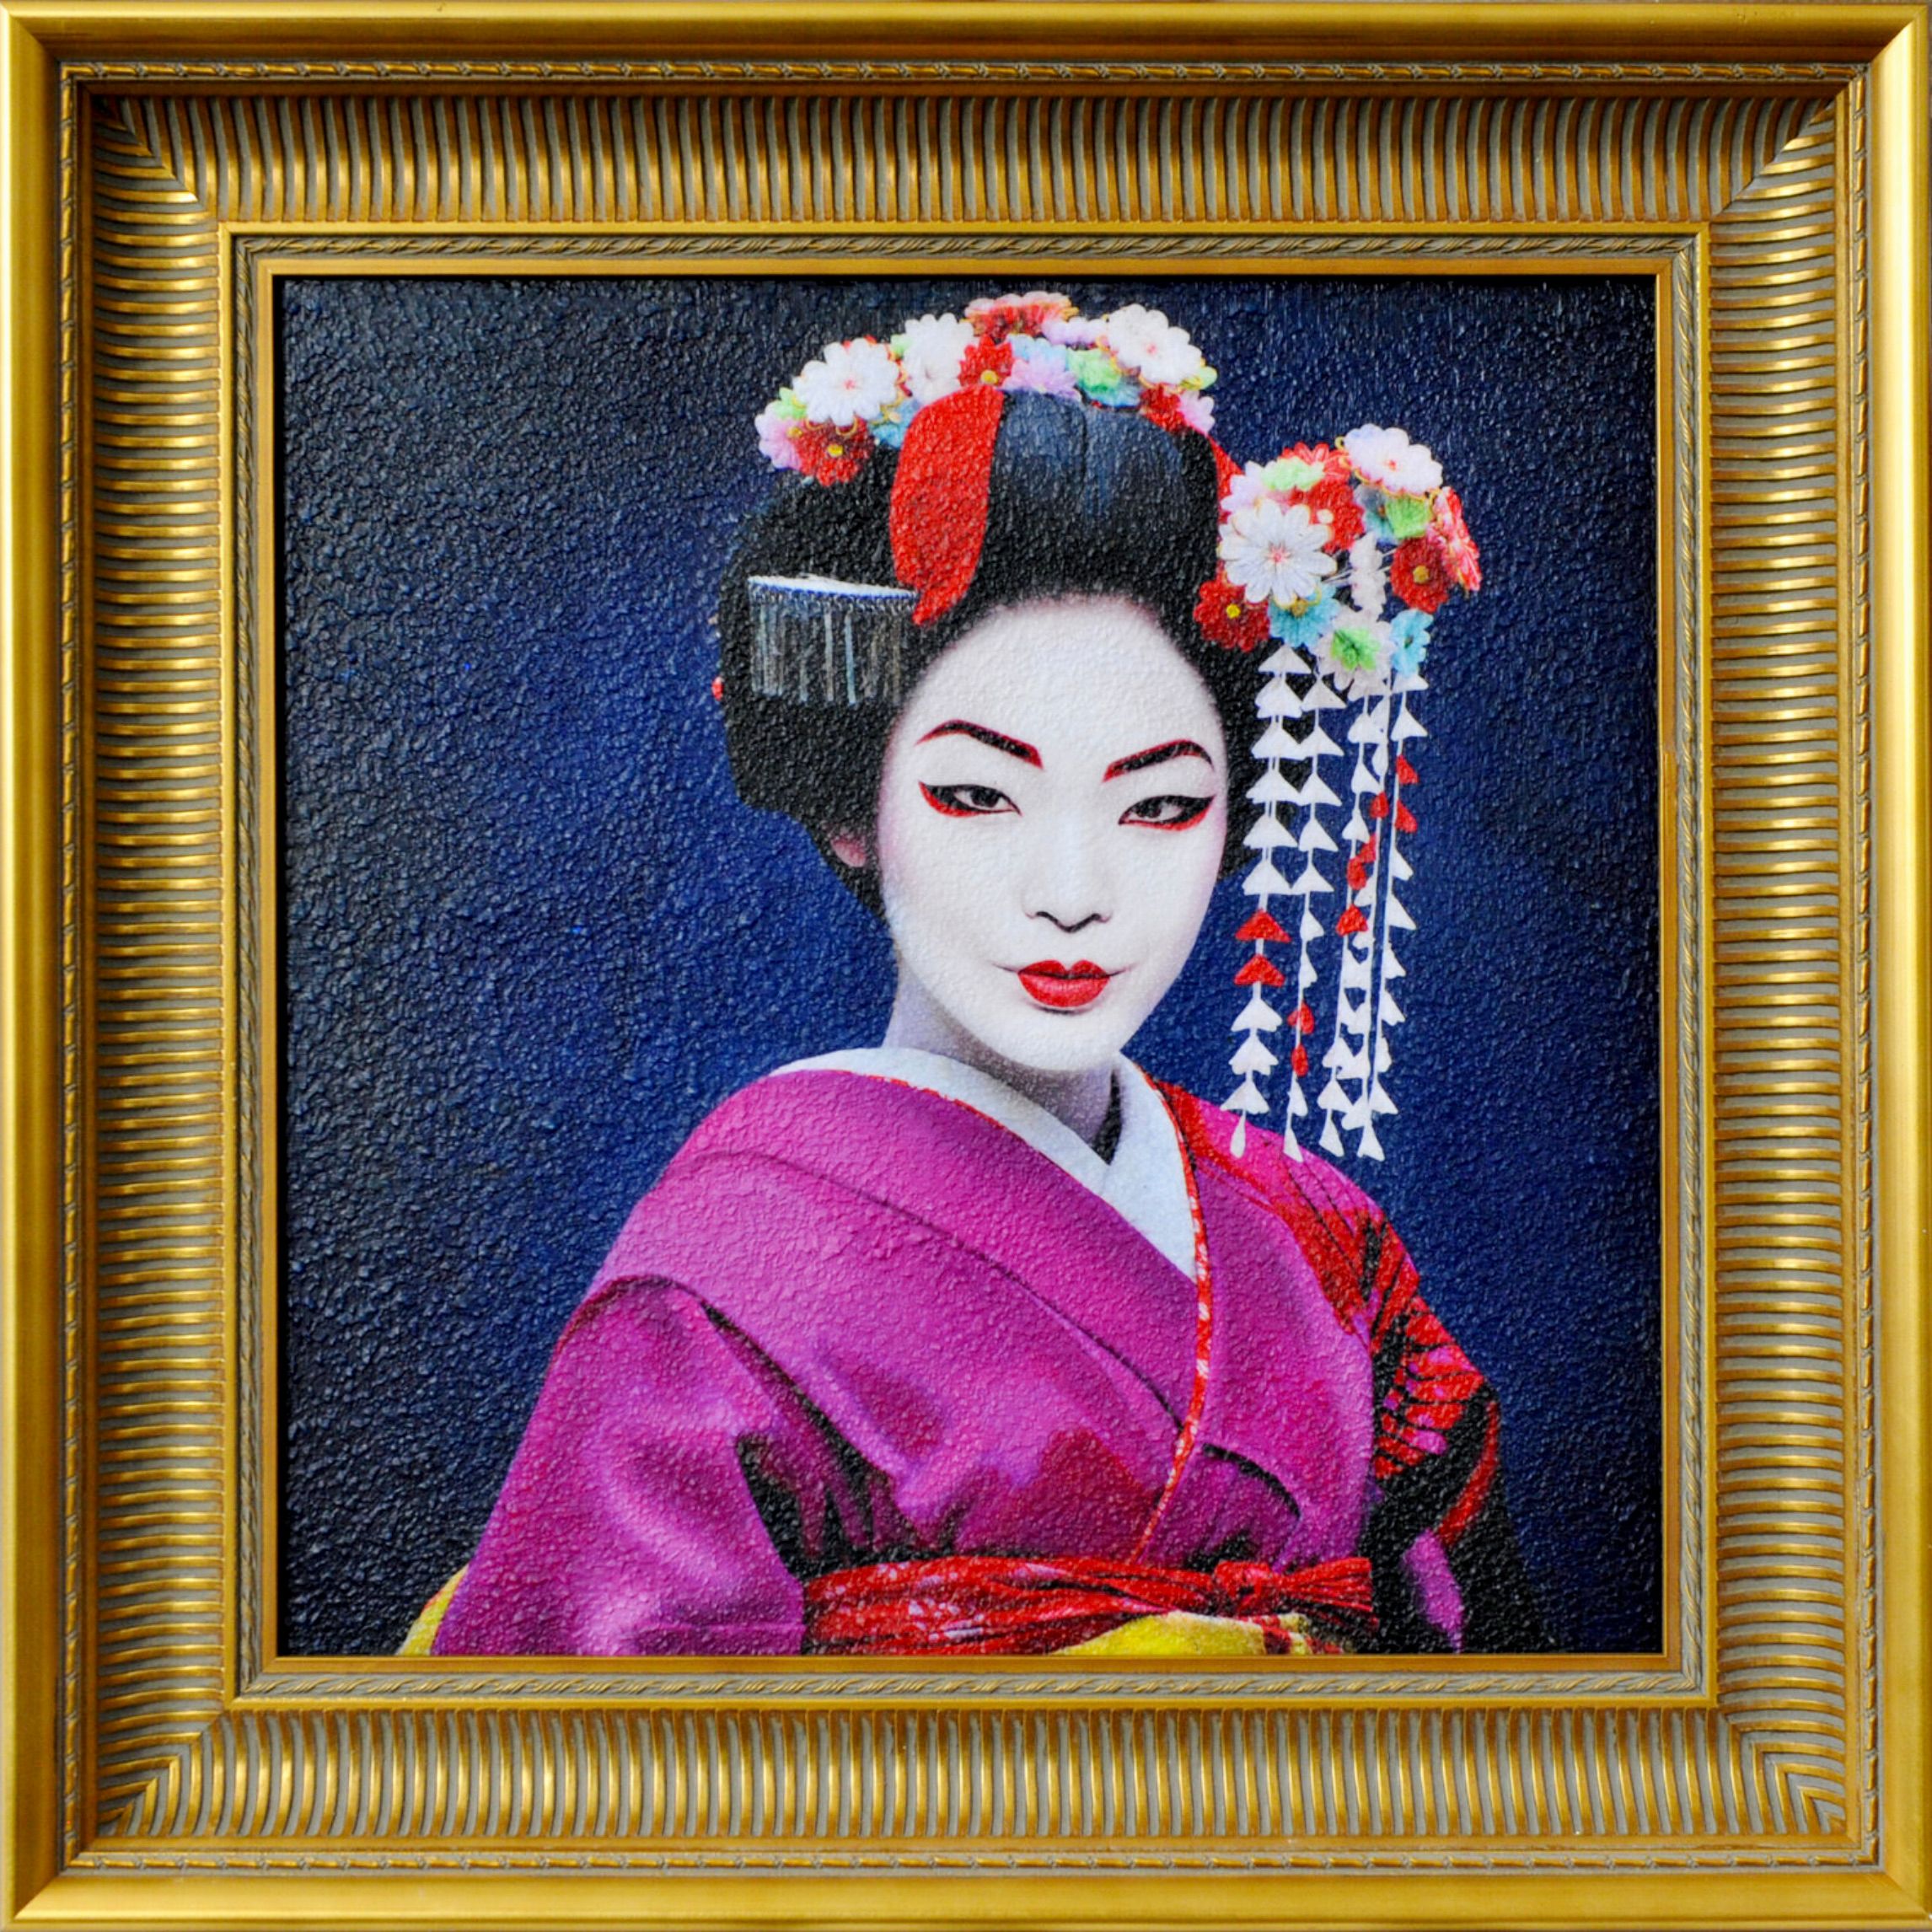 La "Geisha2" de Karin Vermeer est un portrait coloré d'une geisha